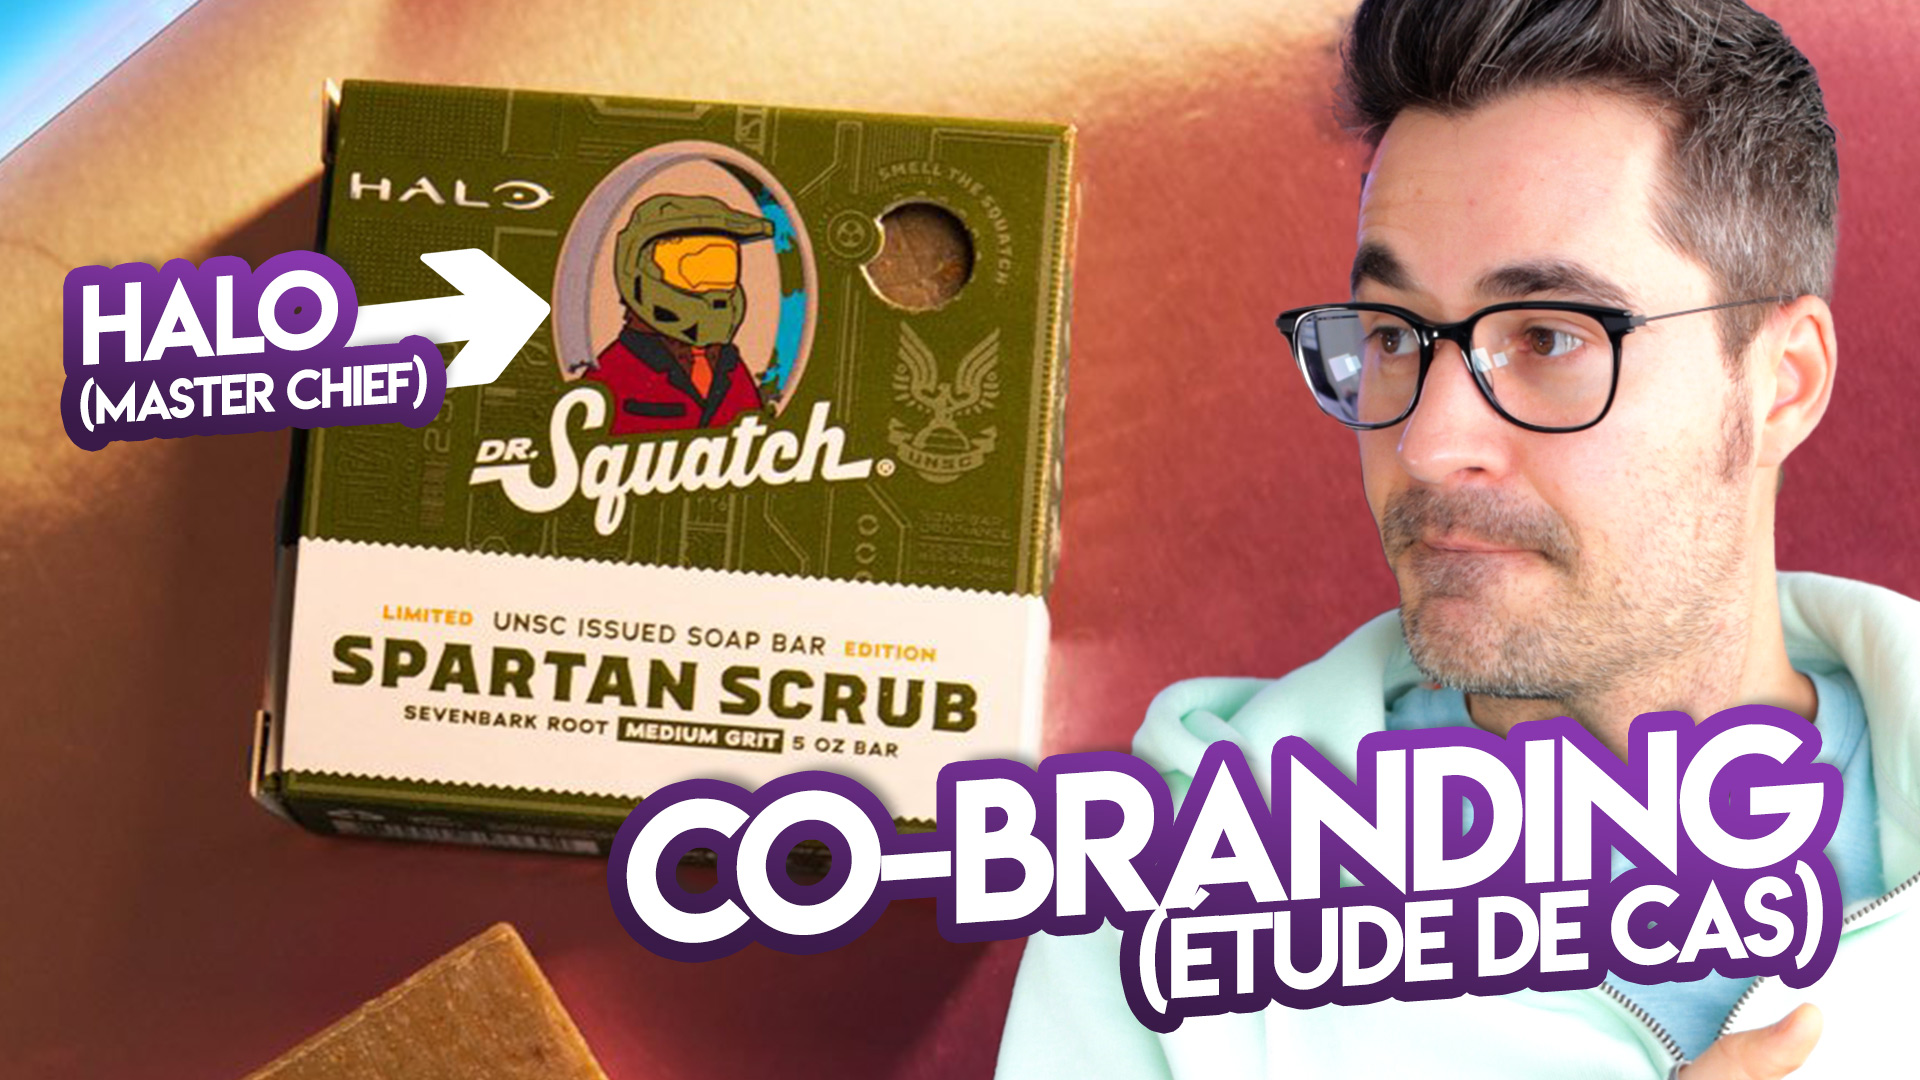 Co-branding : le savon Halo Infinite de Dr Squatch (Etude de cas)